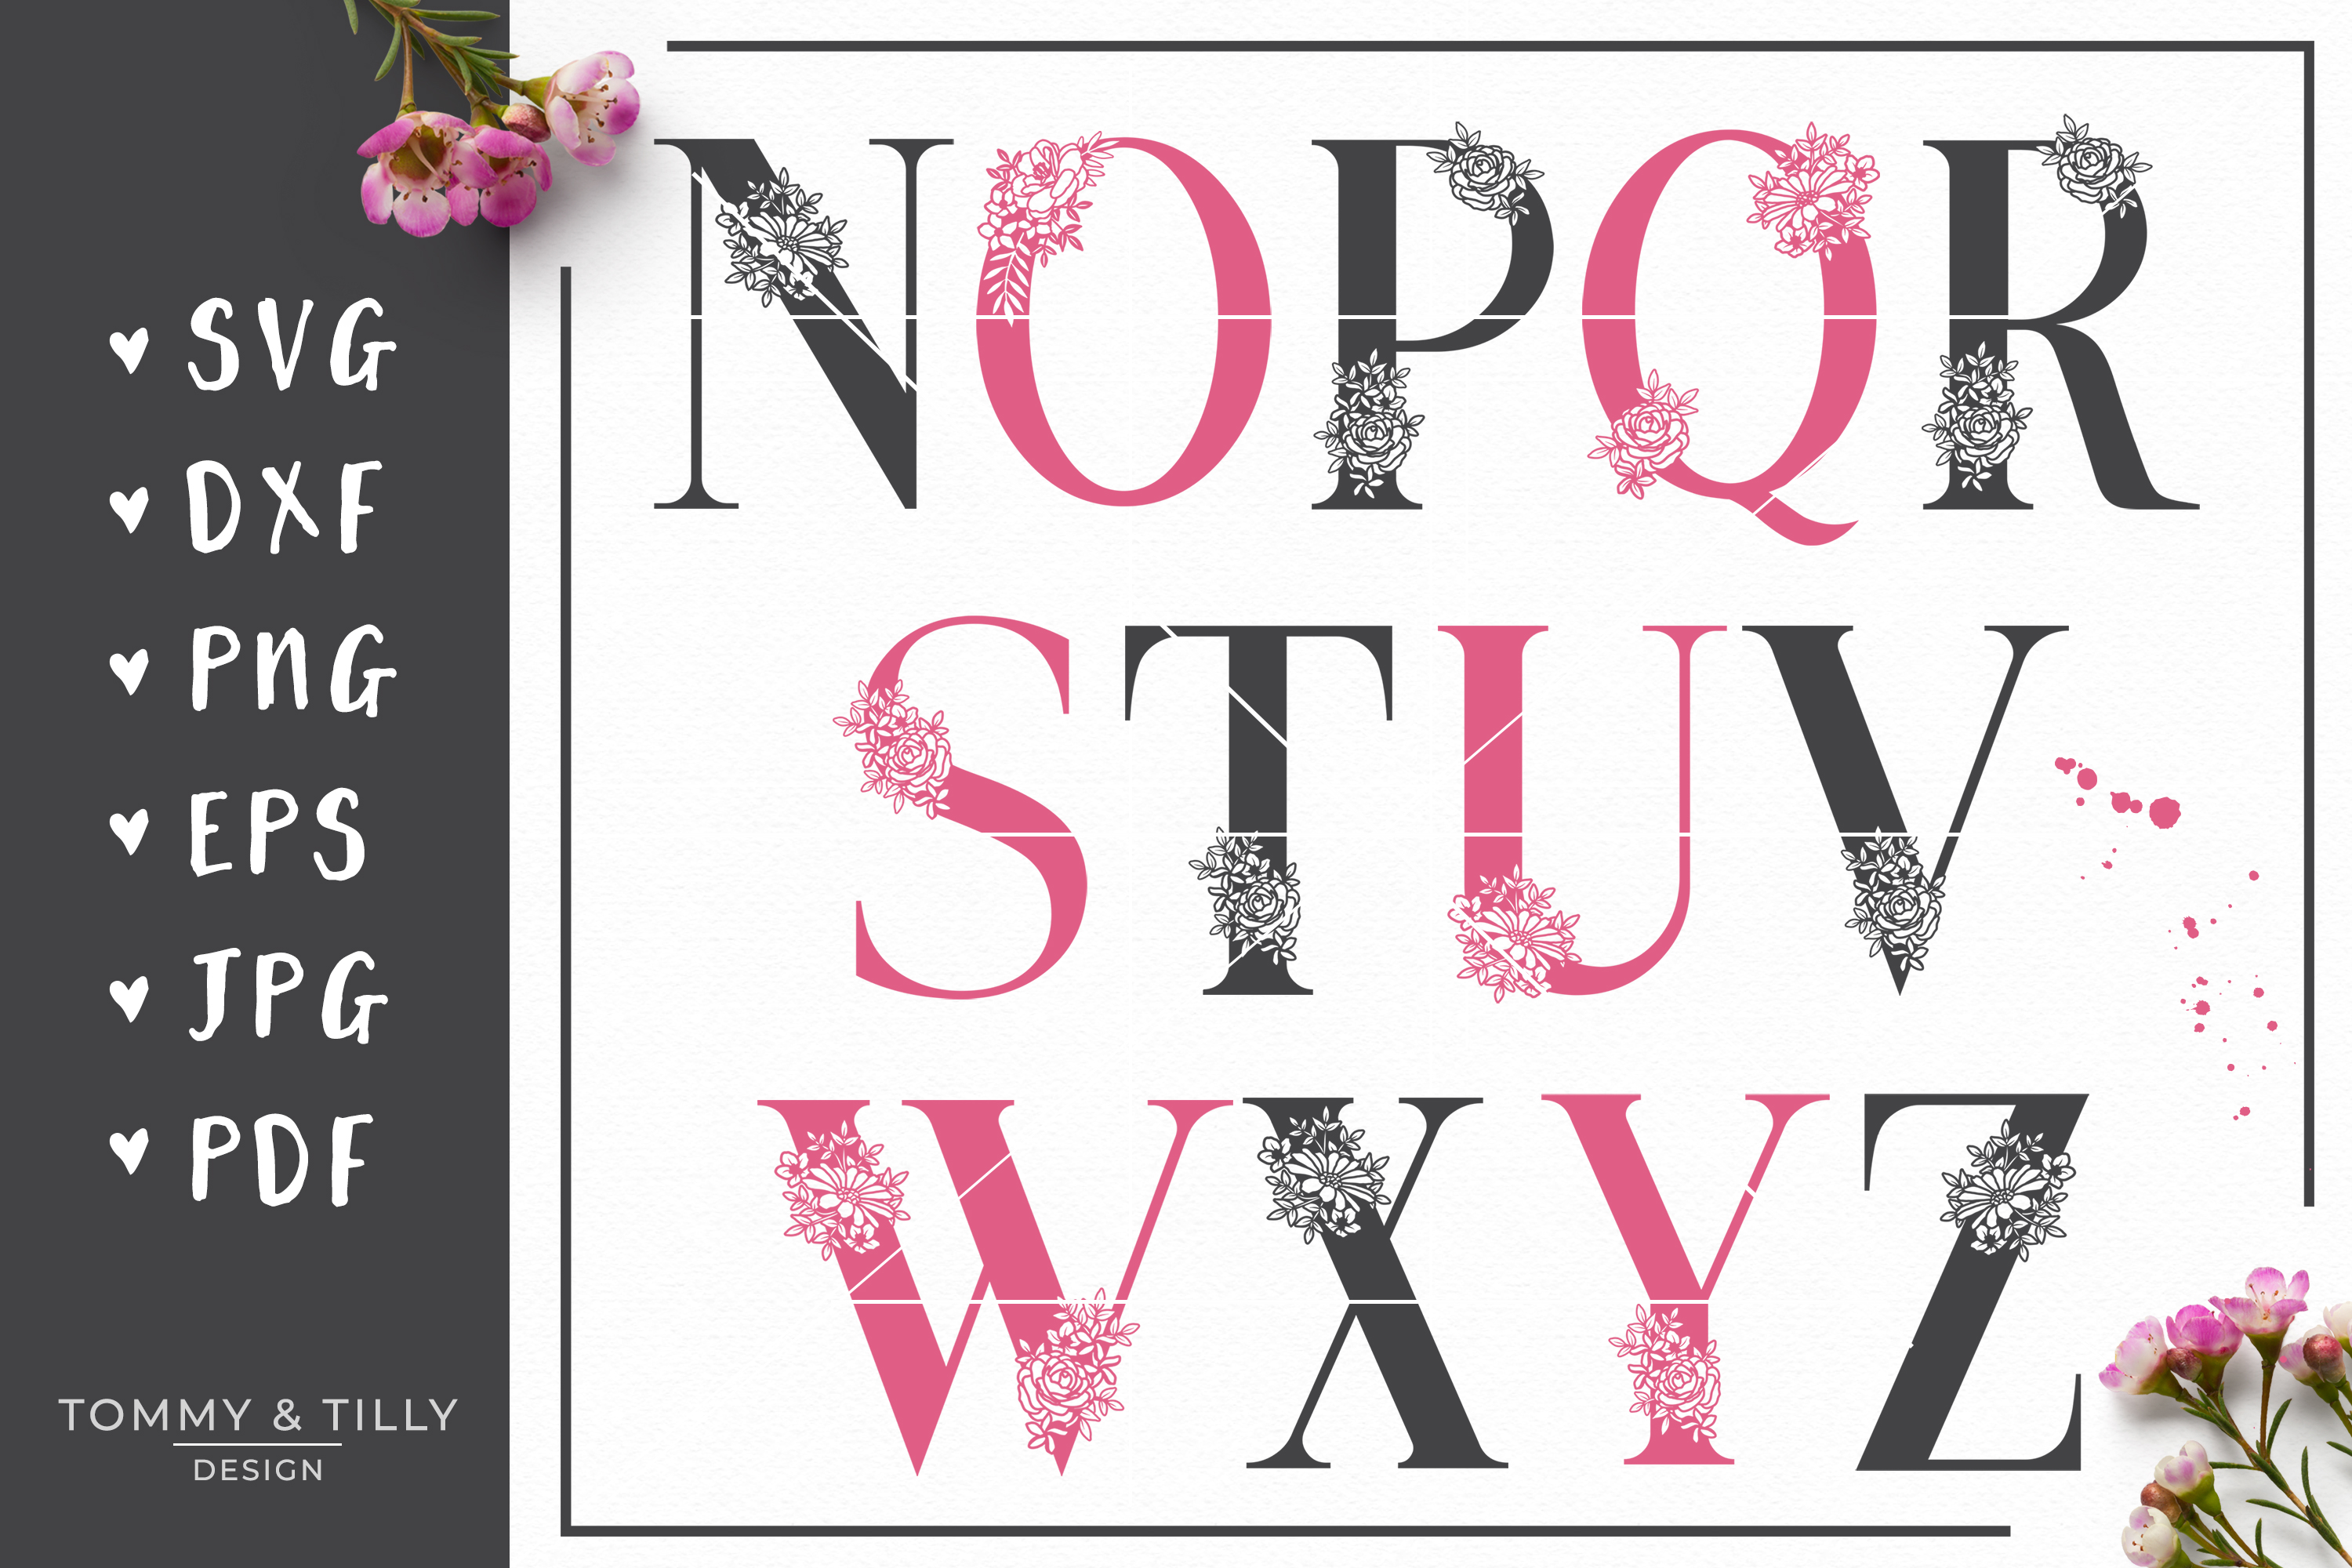 A-Z Floral Letters Bundle - SVG DXF PNG EPS JPG PDF Cut ...